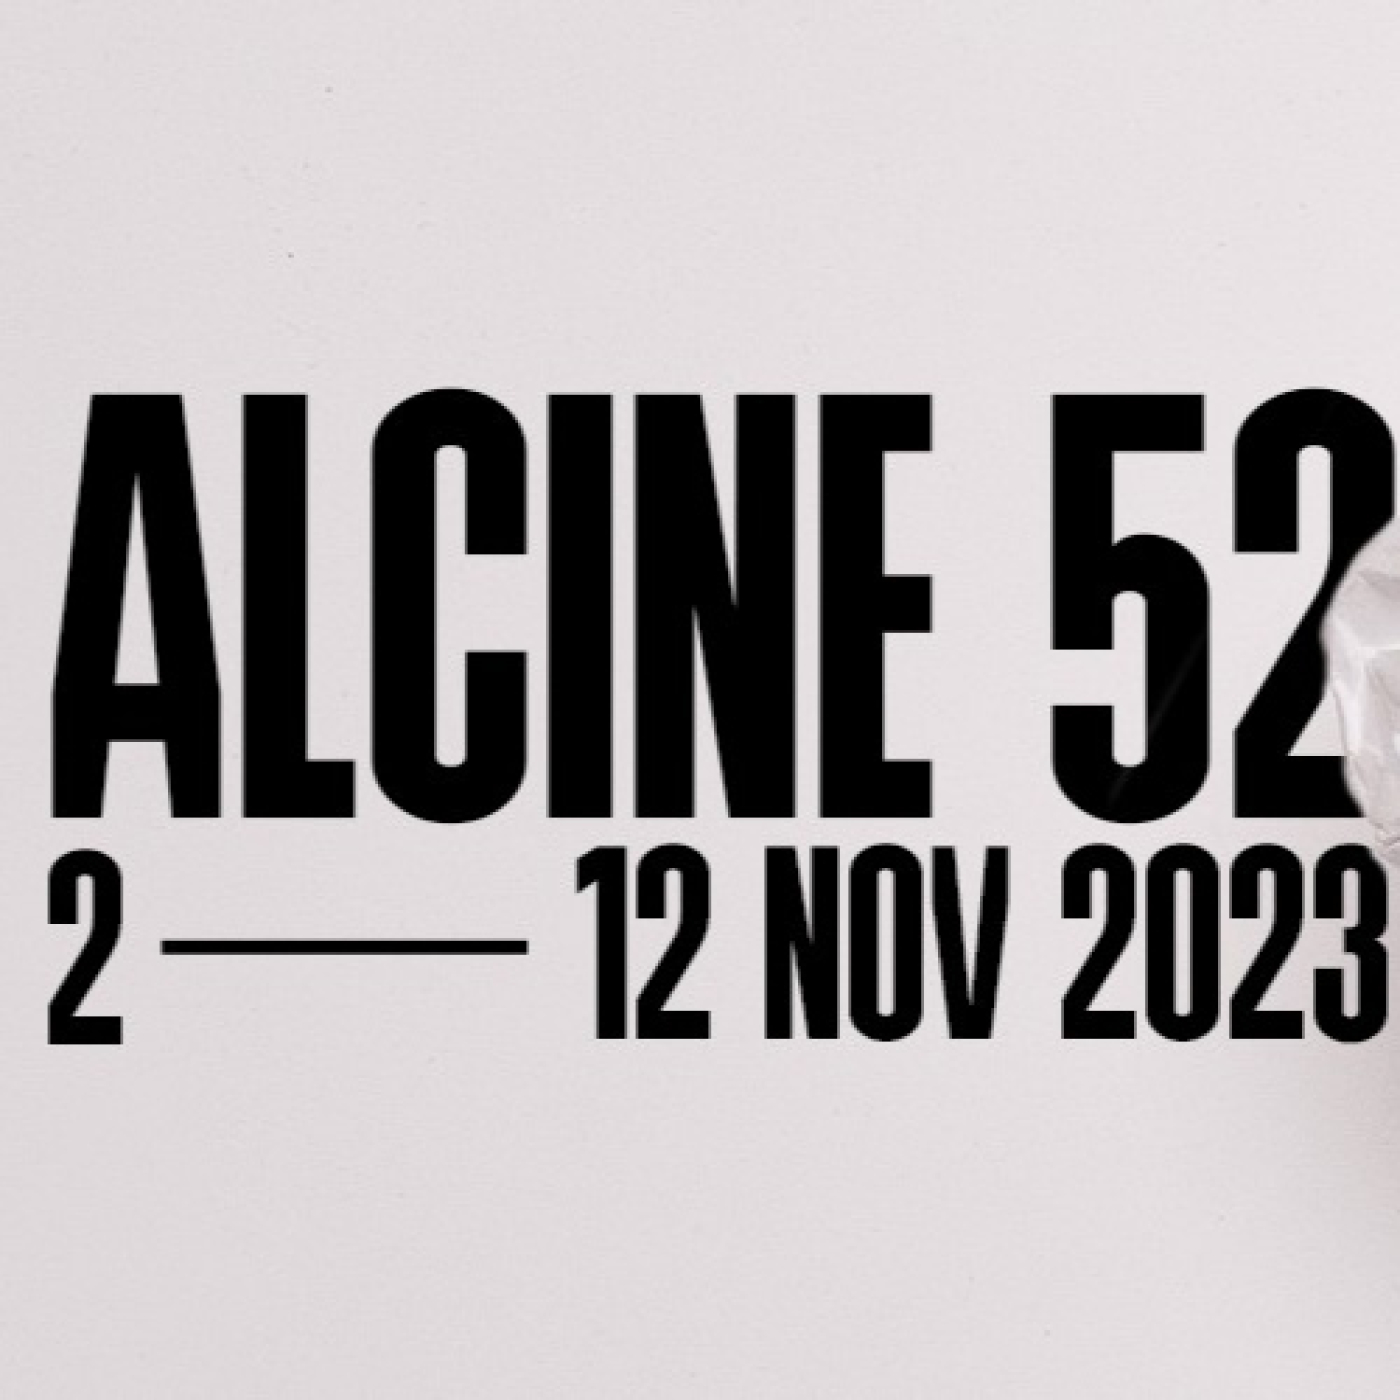 / VR181 / Alcine: Innovando con el cine festivalero desde Alcalá de Henares